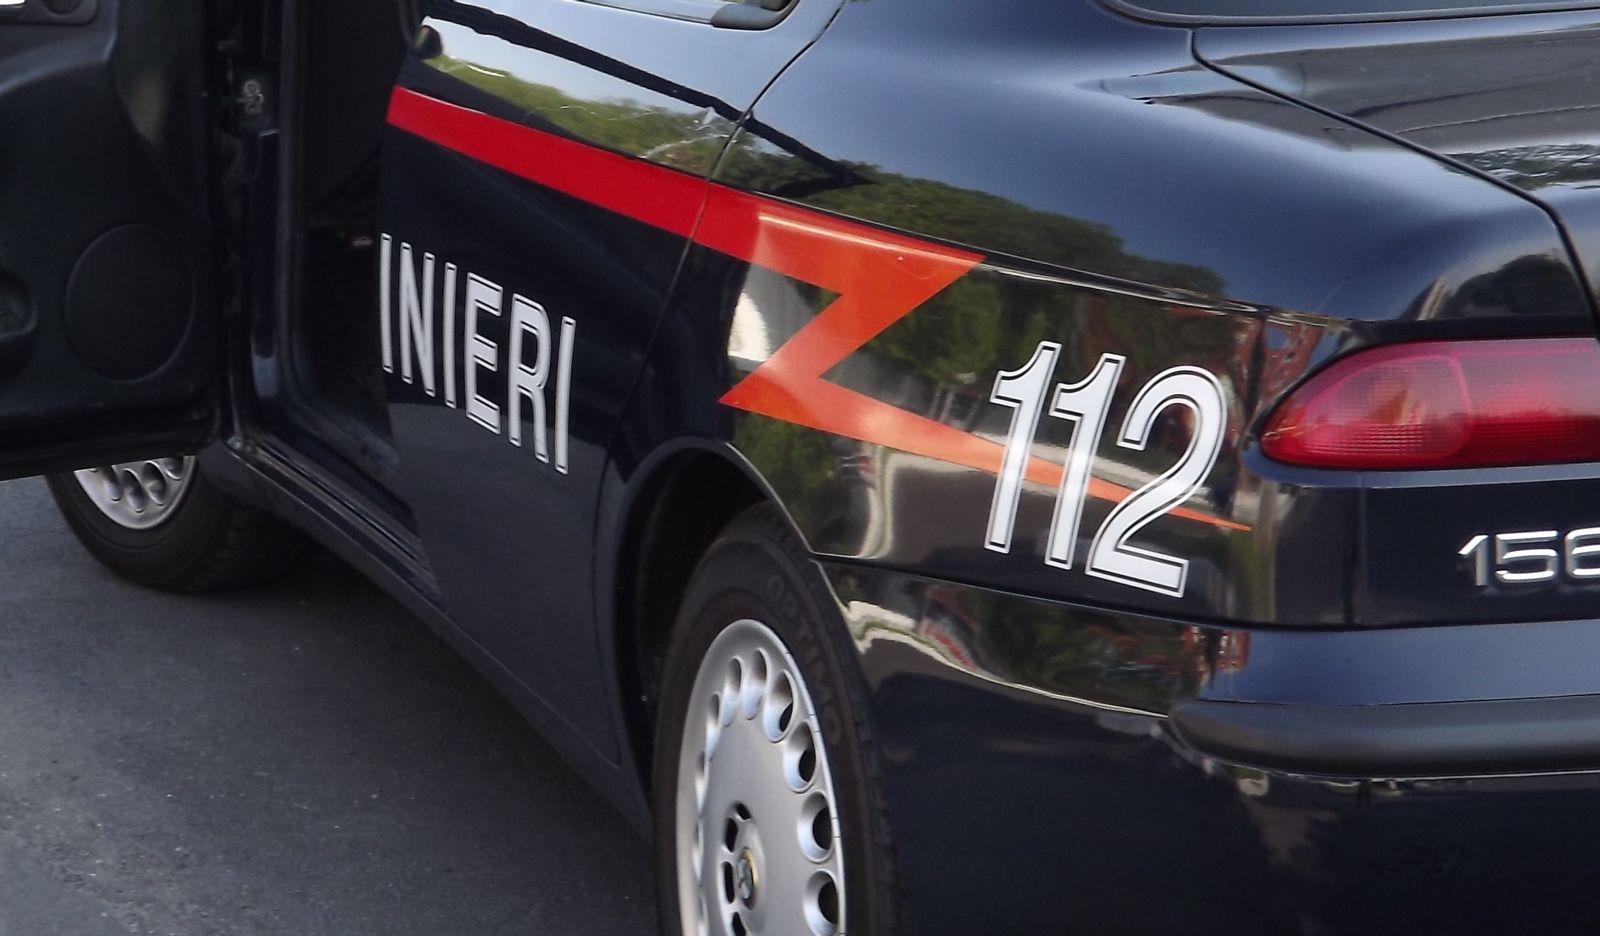  Vomero, carabinieri arrestano gli autori di almeno 15 rapine alle farmacie